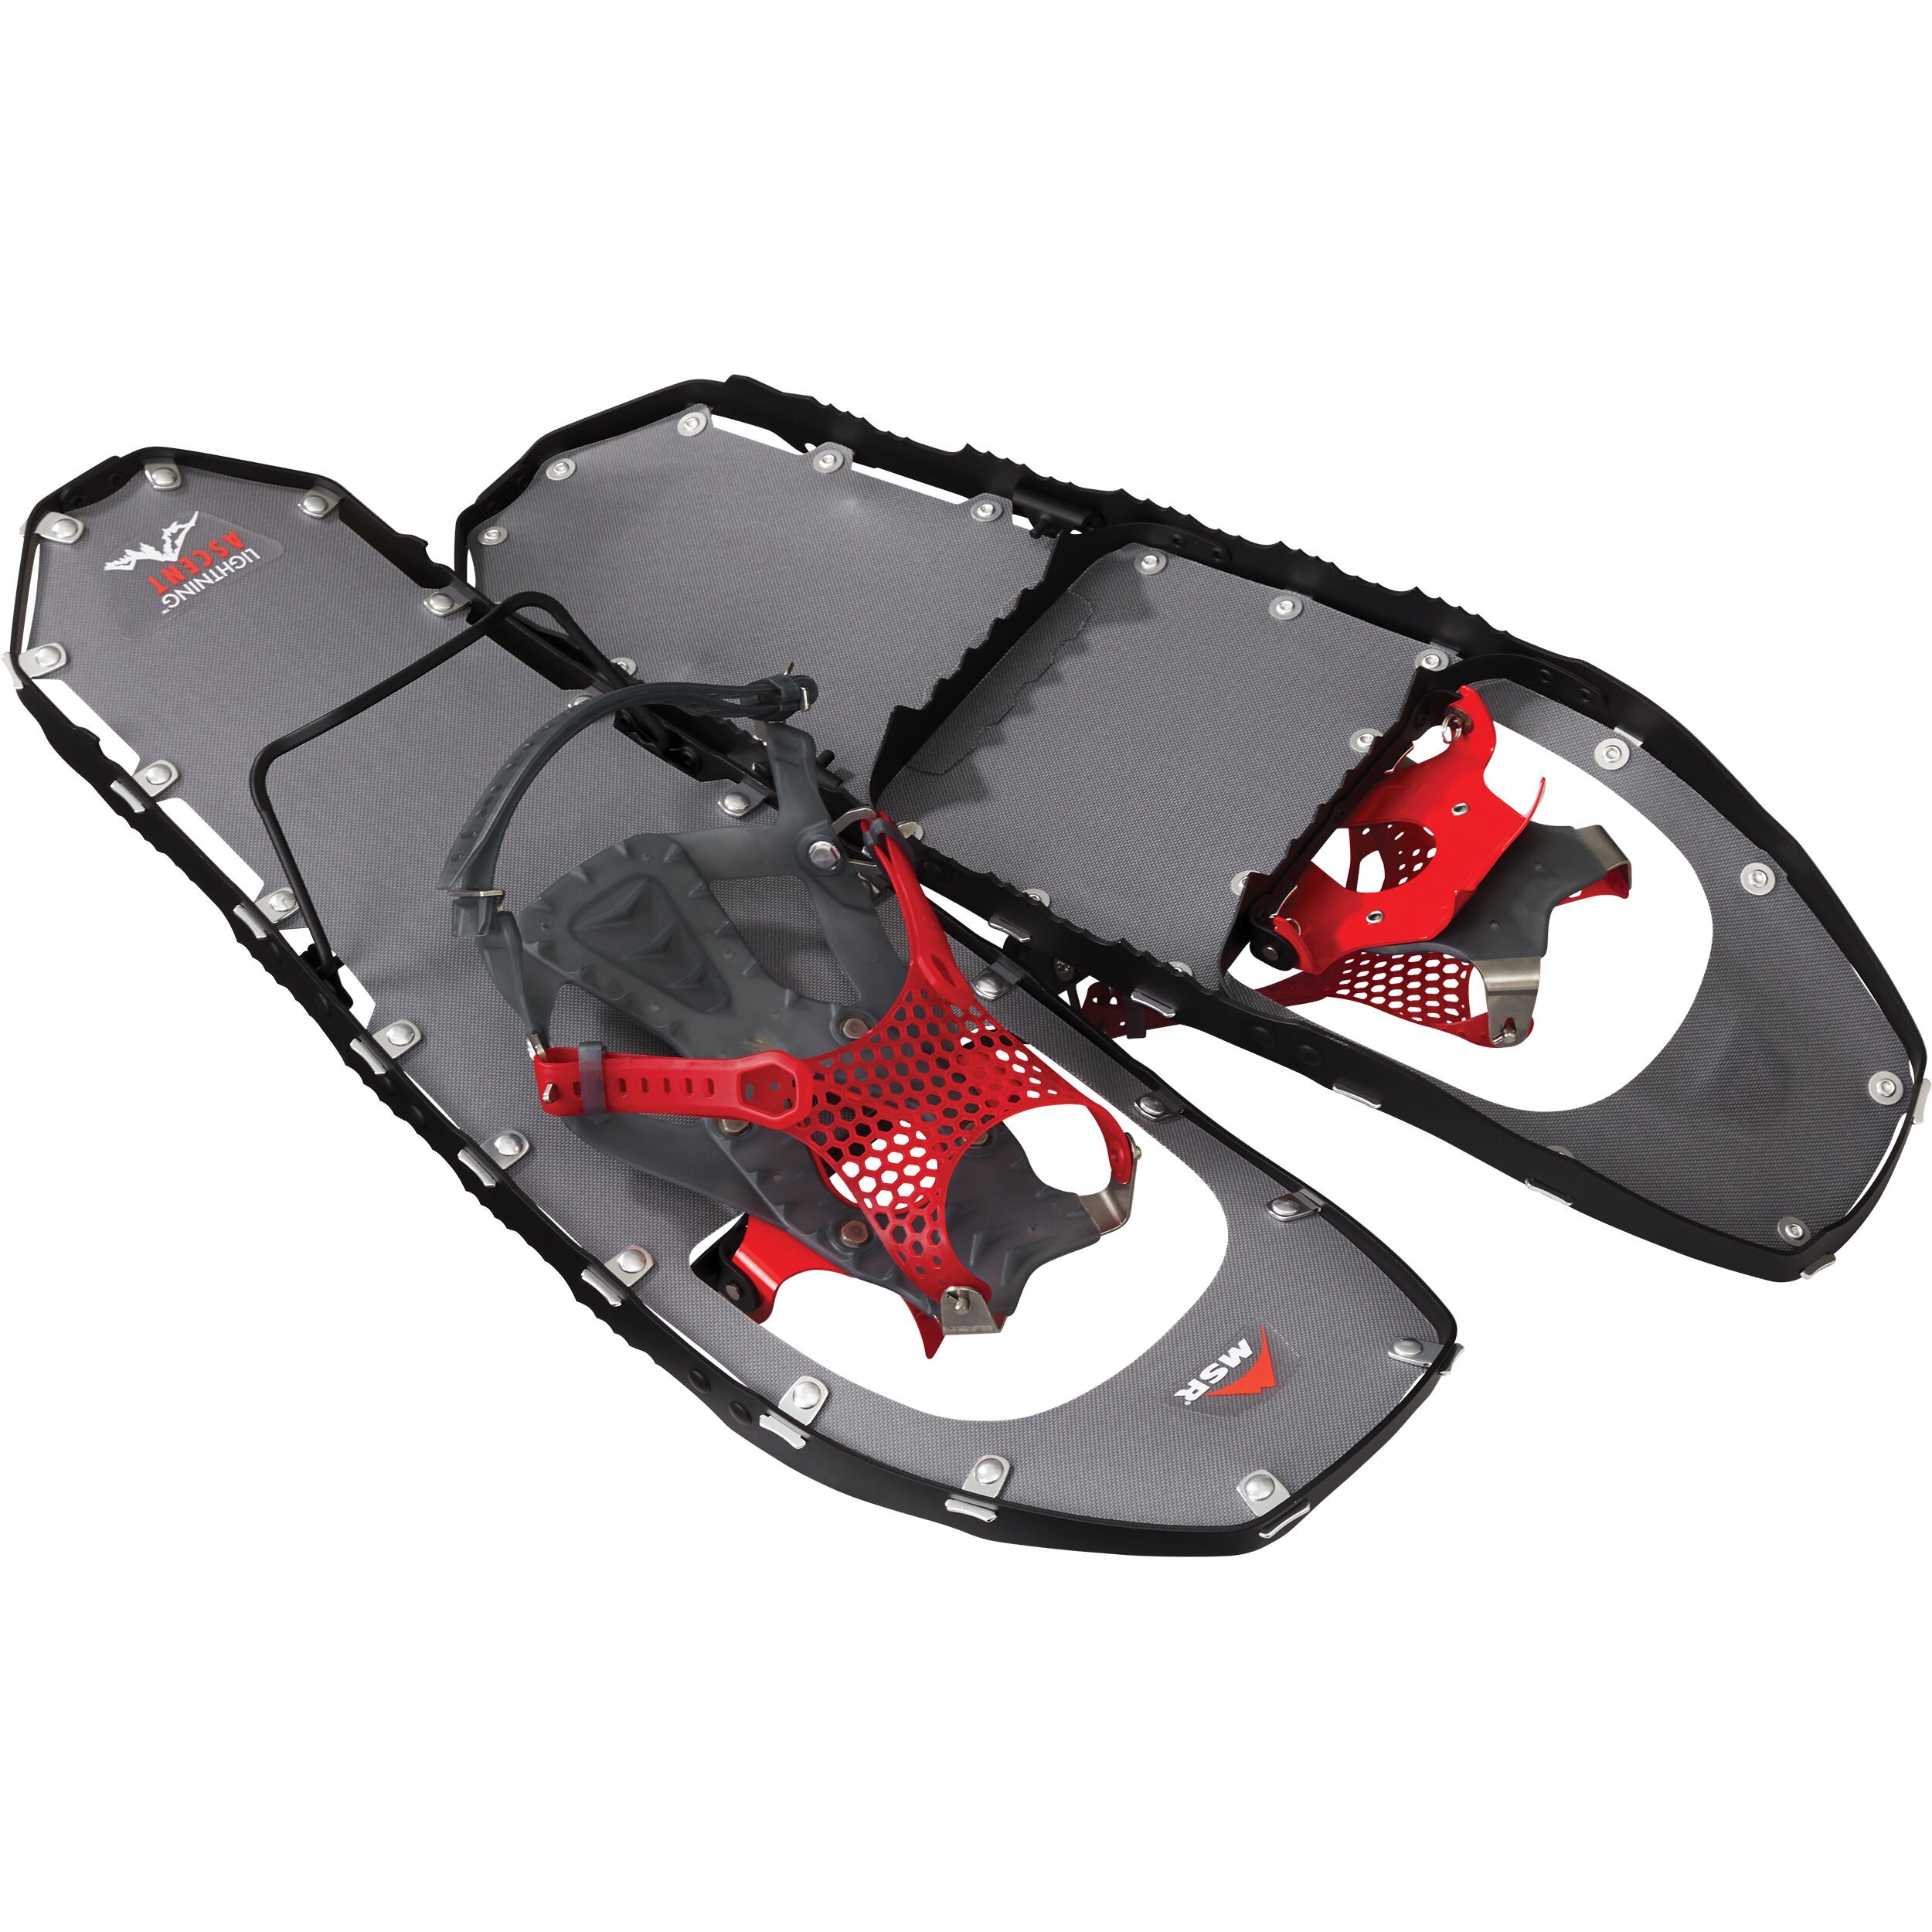 Lightning™ Ascent MSR Snowshoes - Ultimate Snowshoe | MSR®